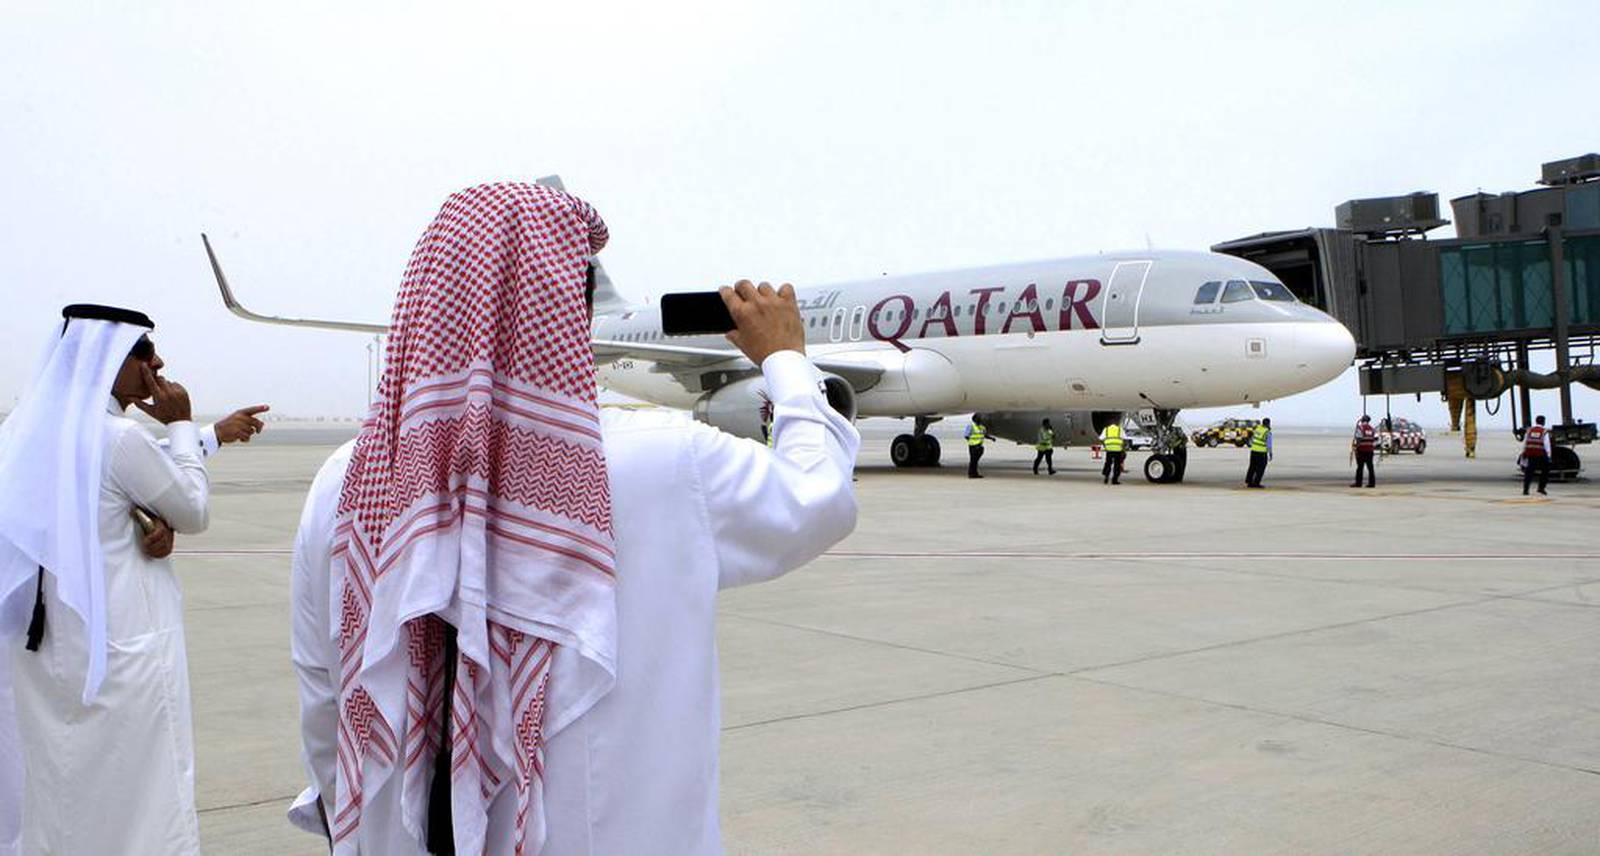 New Airport Qatar Jobs